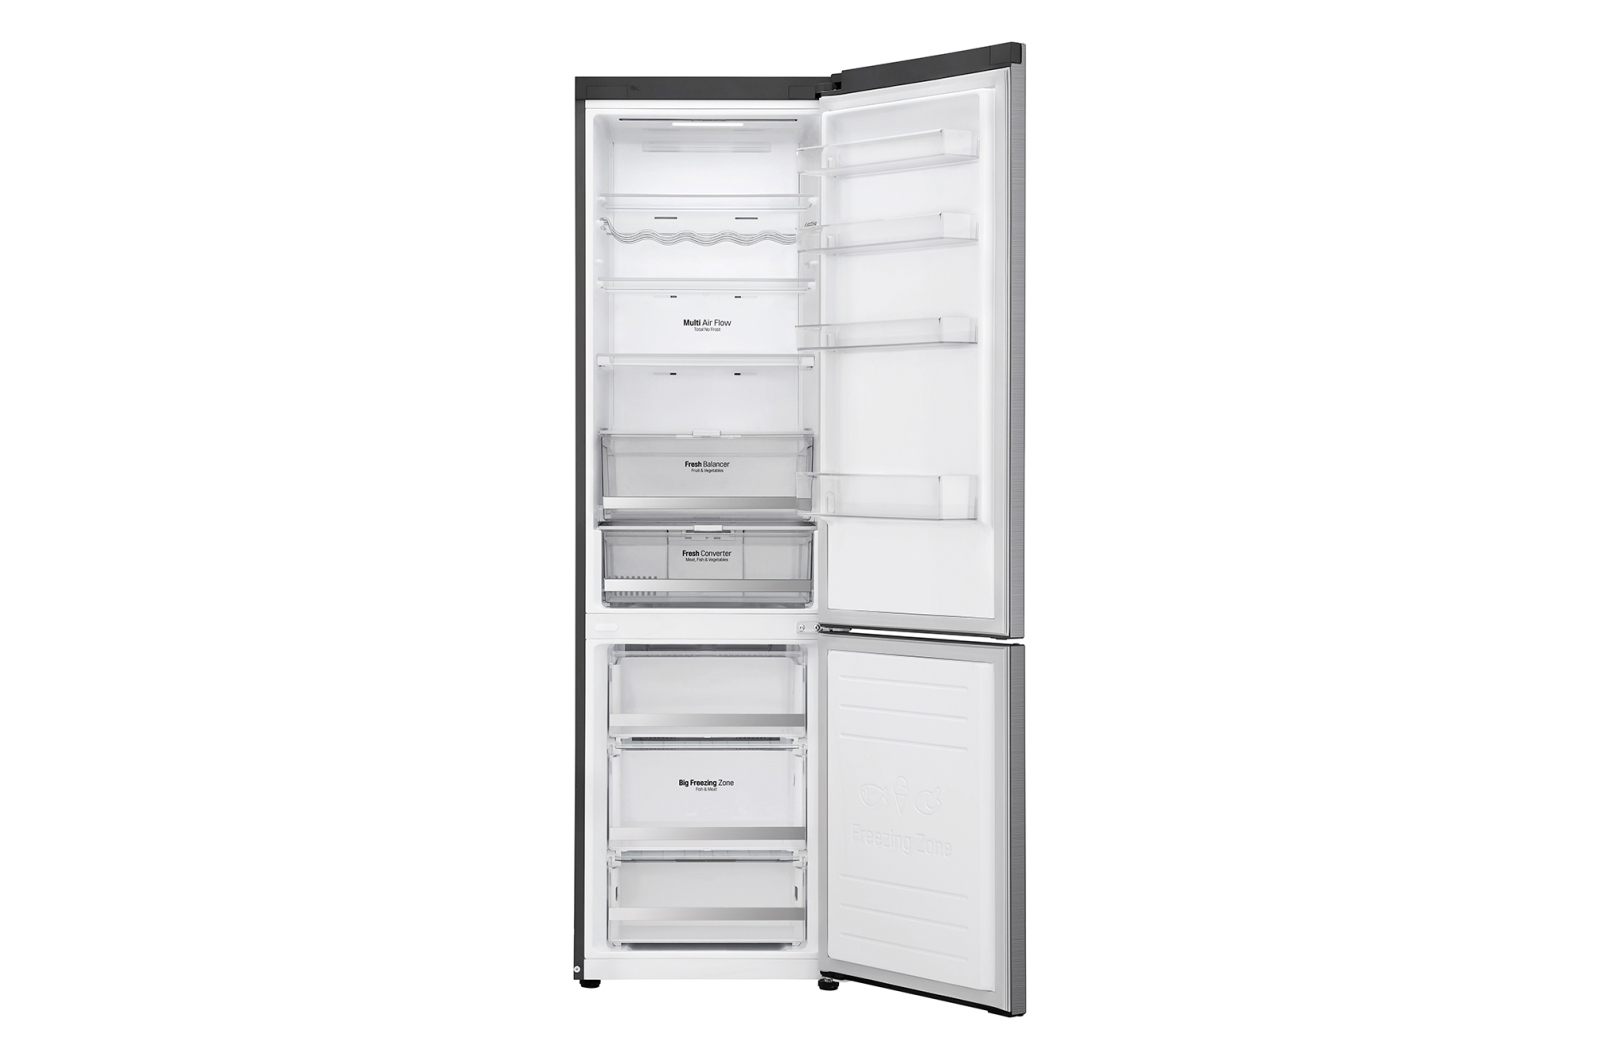 холодильник lg ga-b509smdz, купить в Красноярске холодильник lg ga-b509smdz,  купить в Красноярске дешево холодильник lg ga-b509smdz, купить в Красноярске минимальной цене холодильник lg ga-b509smdz